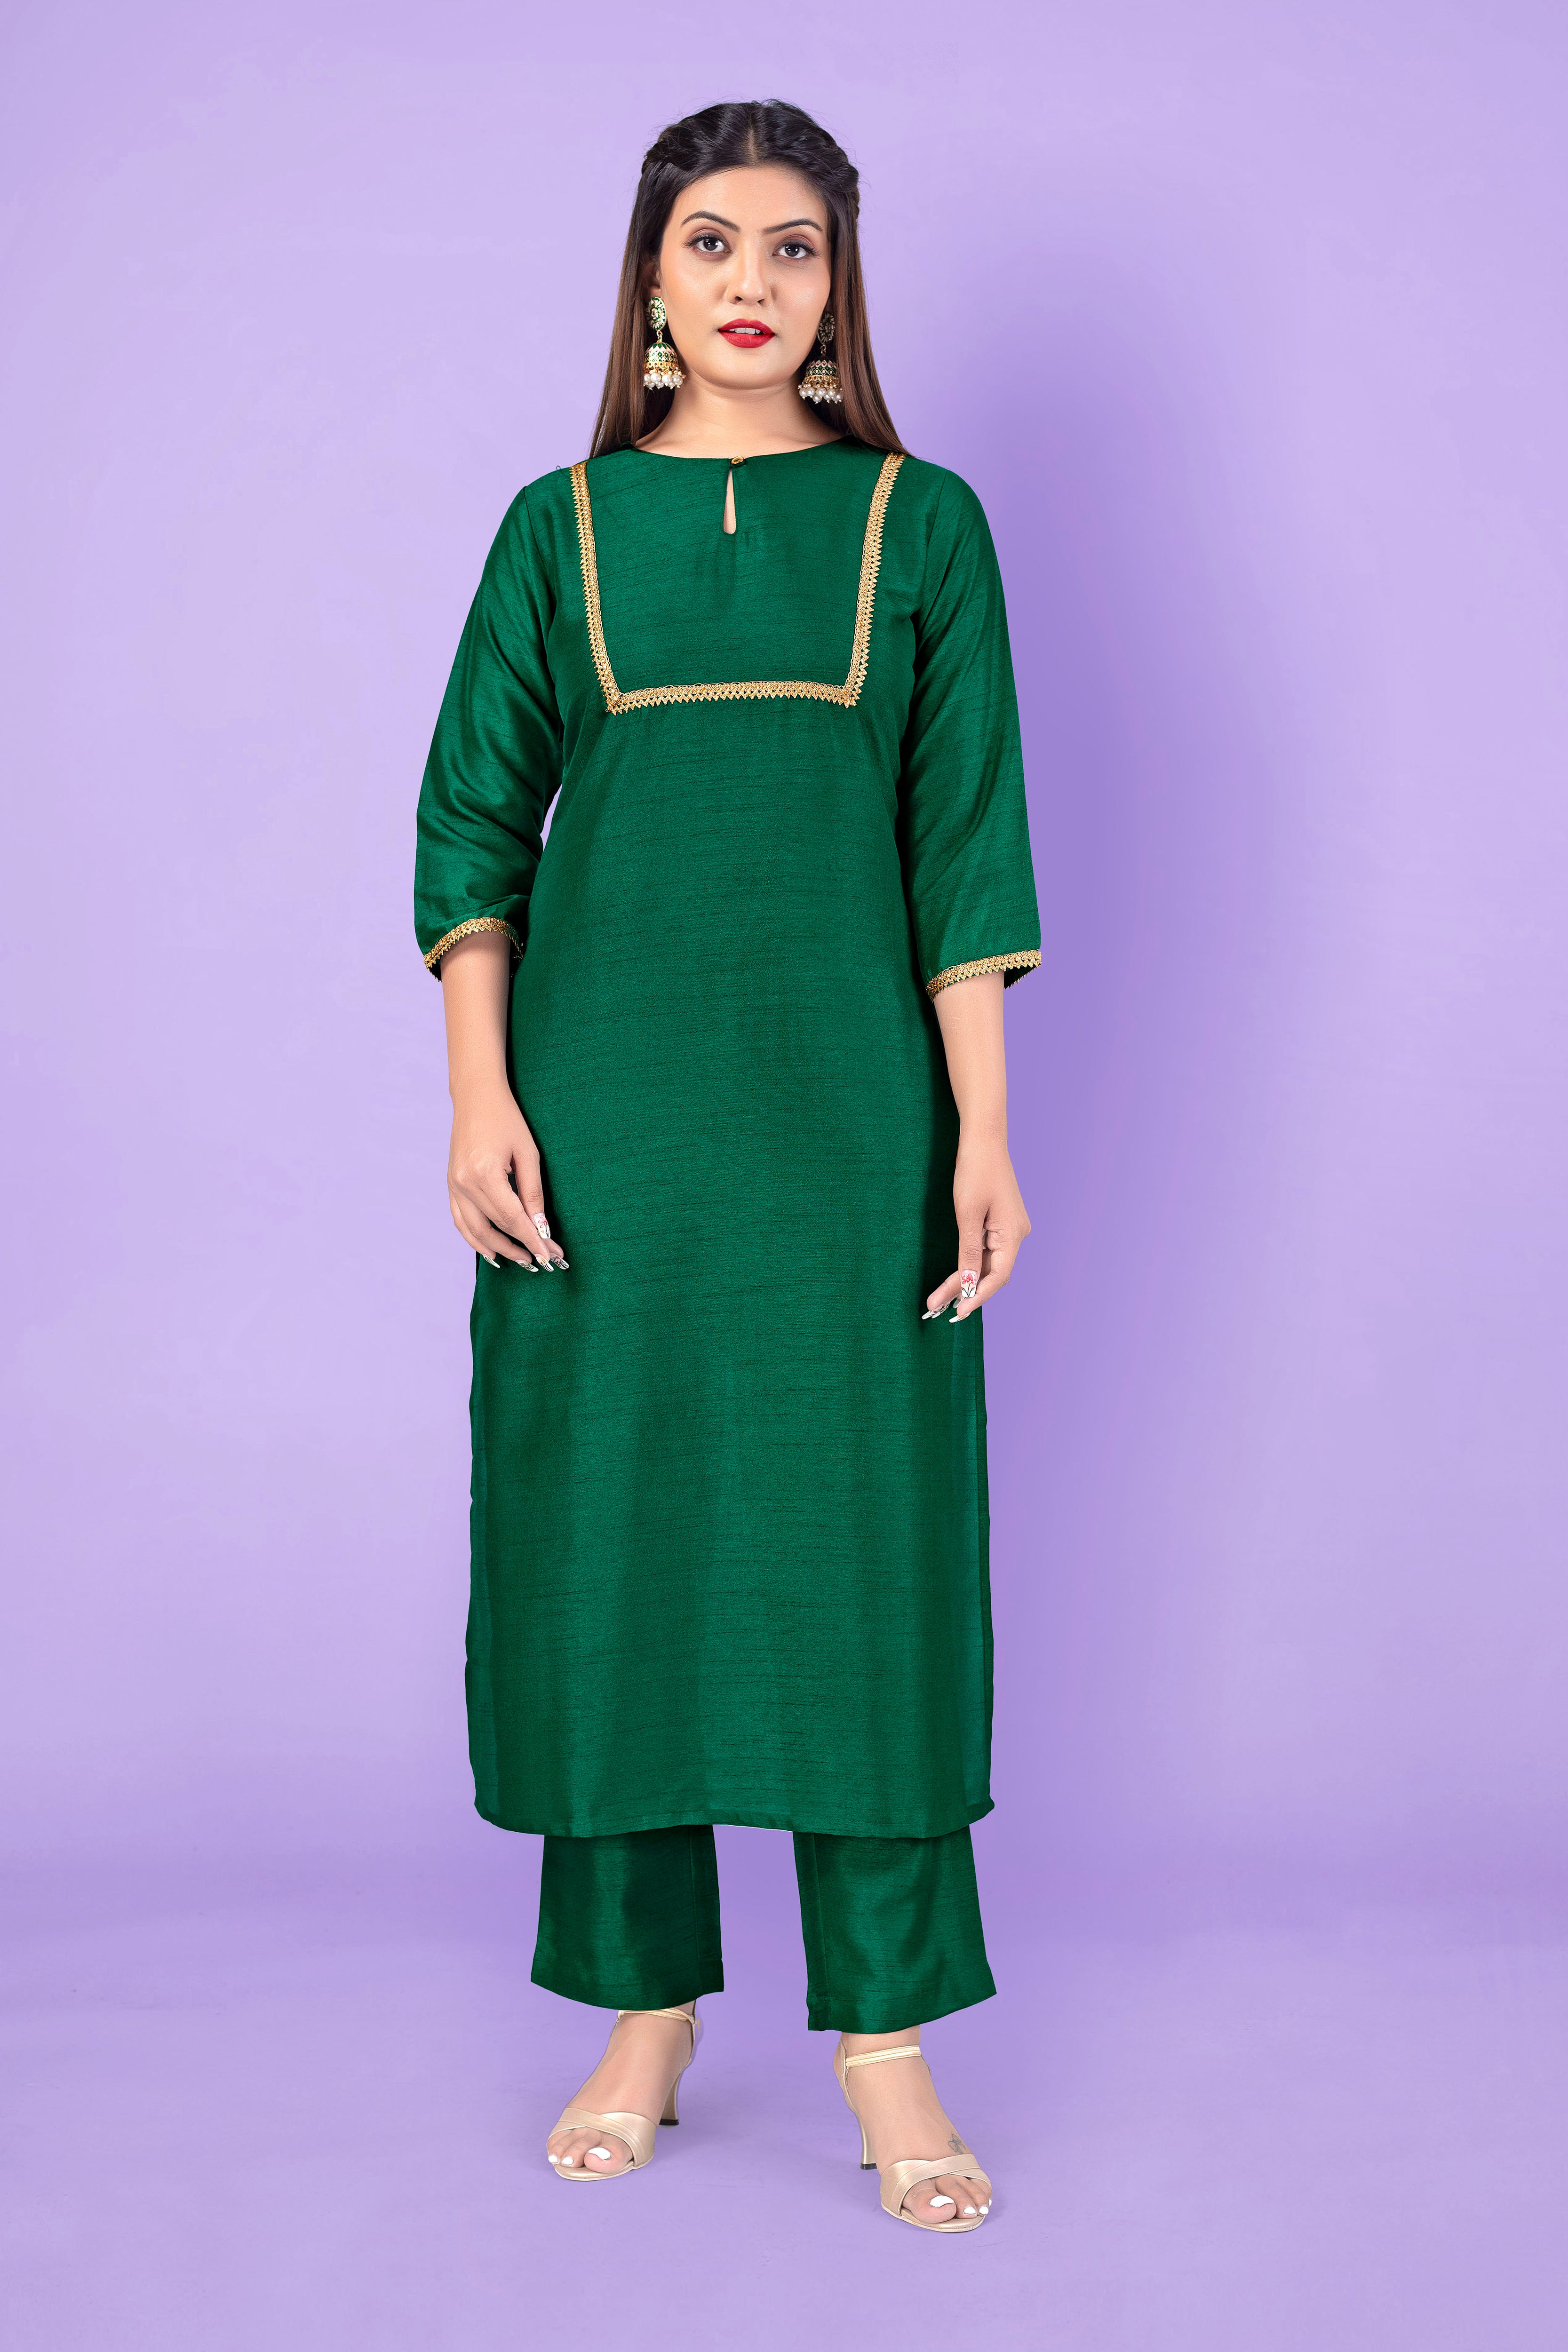 Dark Green Aari Work Kurtis Online Shopping for Women at Low Prices